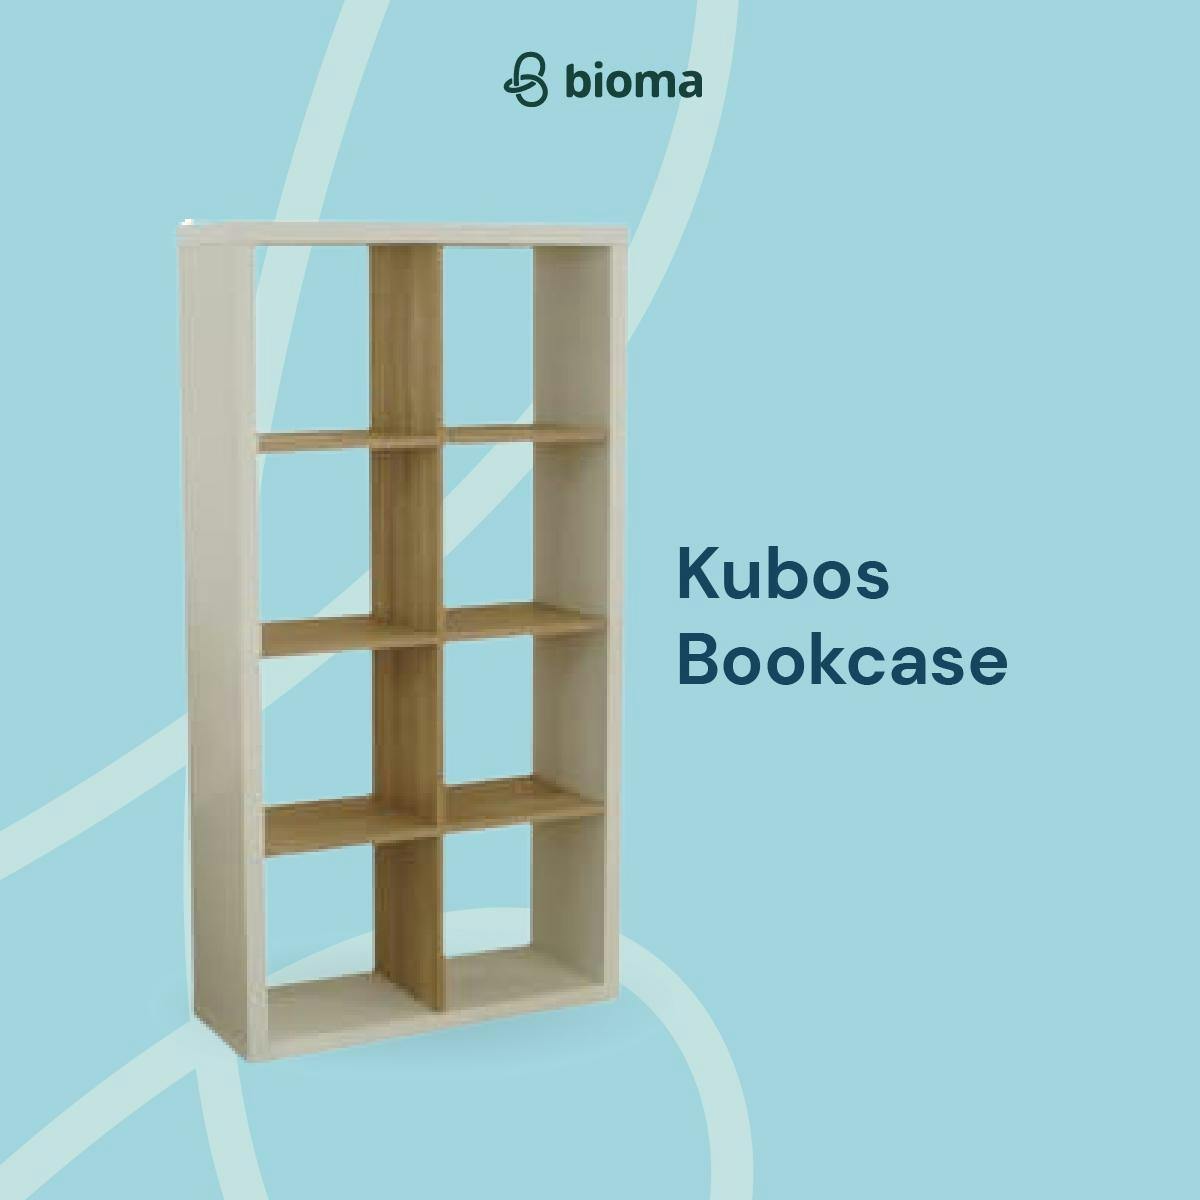 Kubos Bookcase